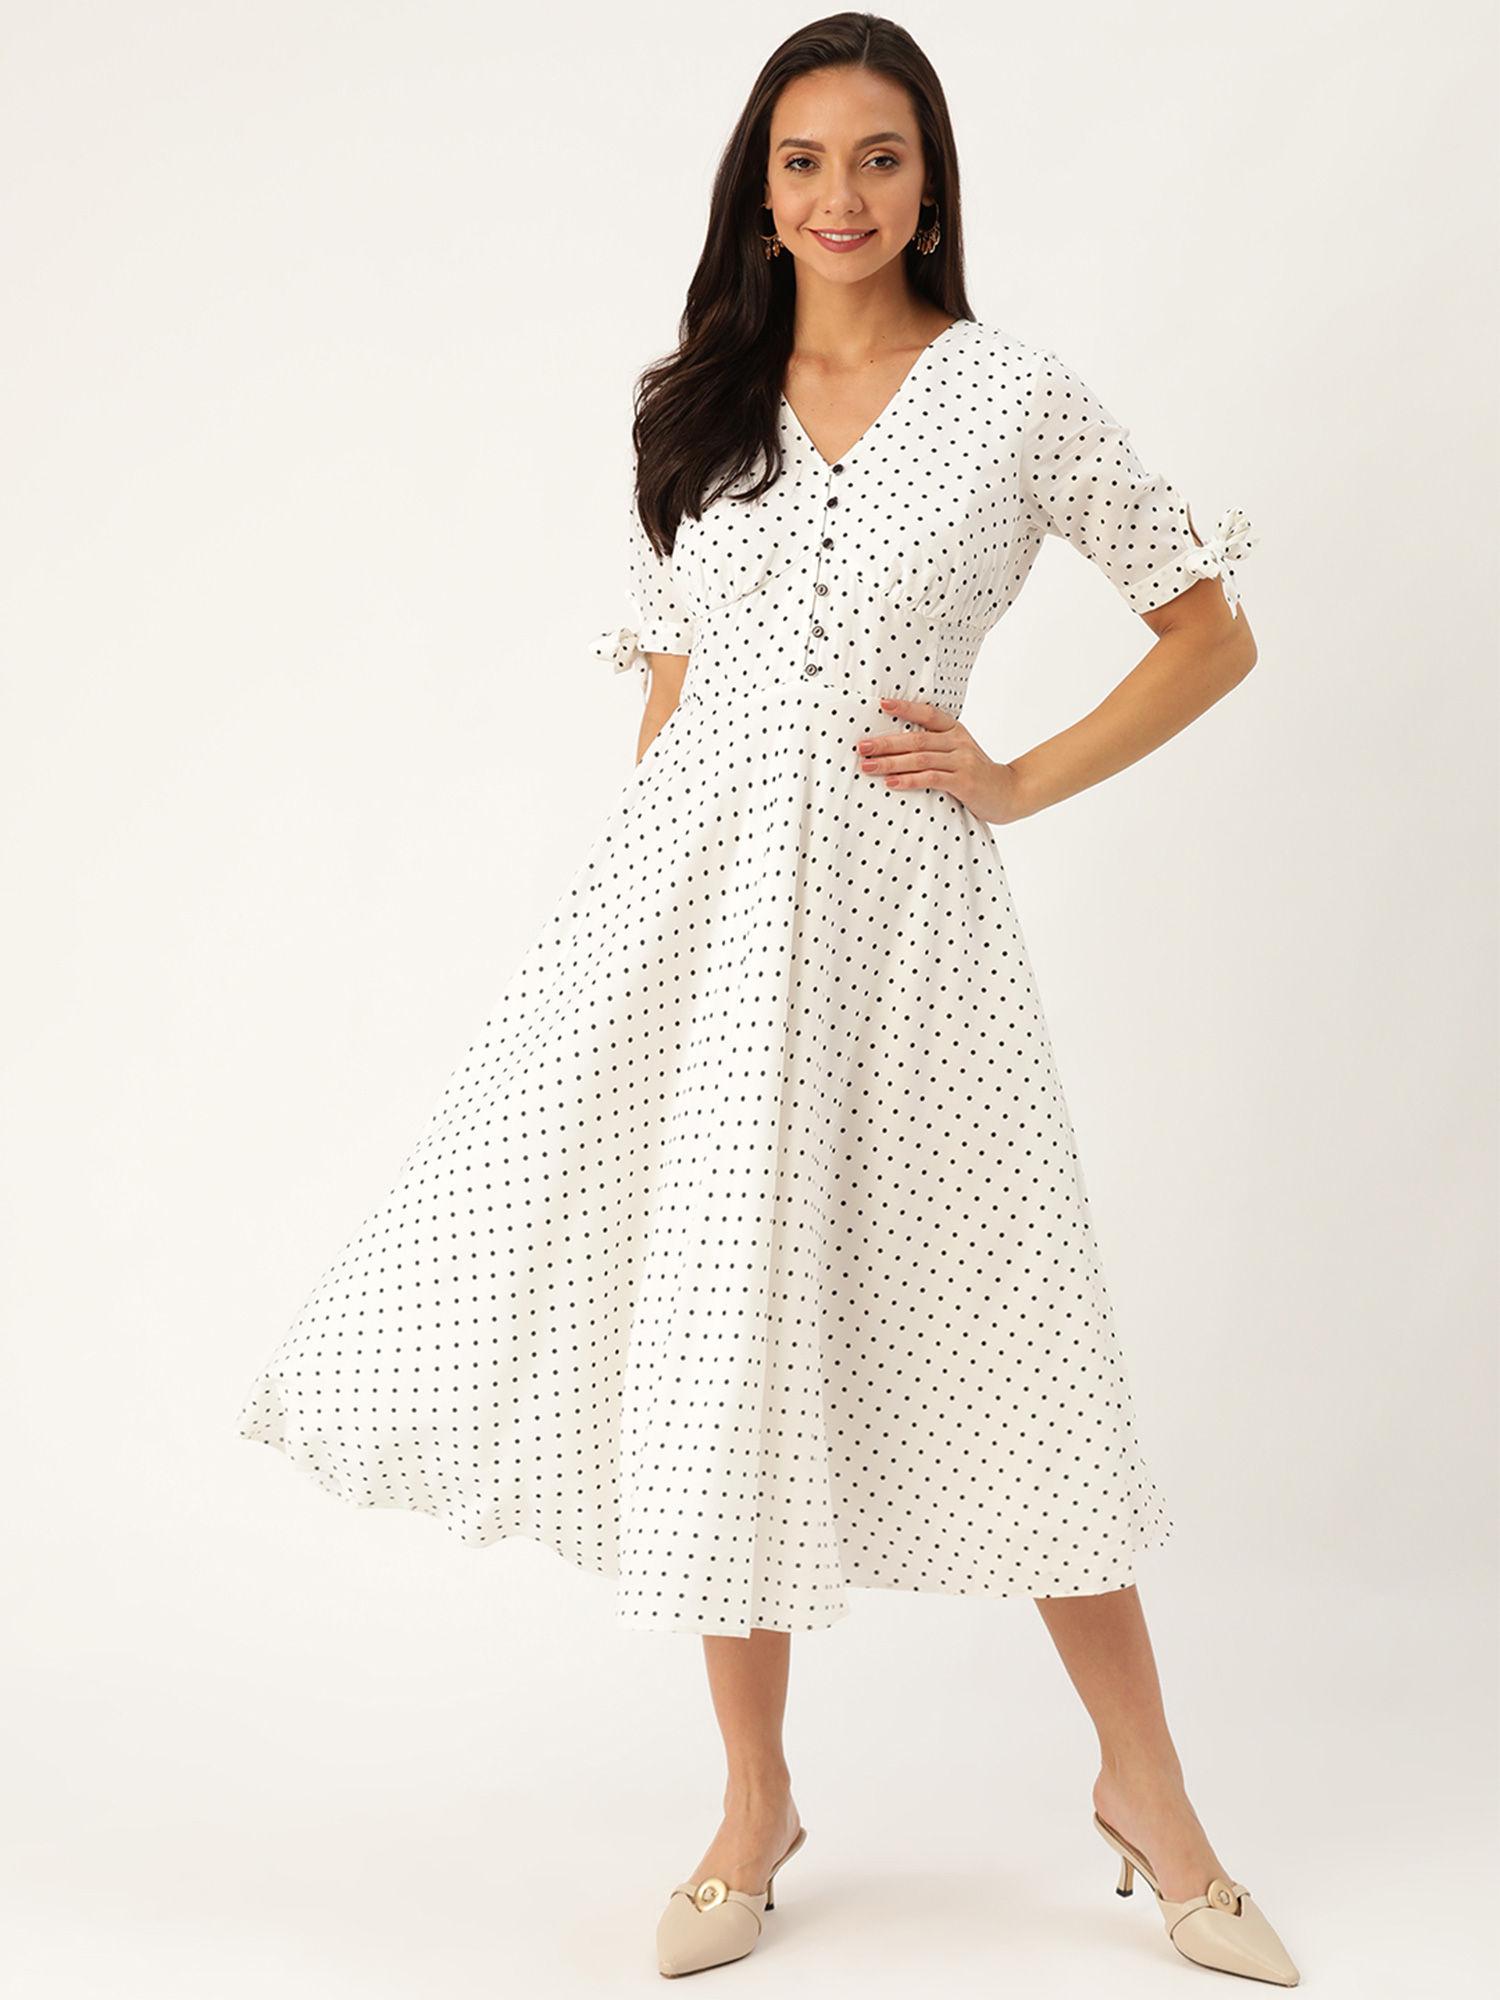 stunning-in-white-polka-dot-dress